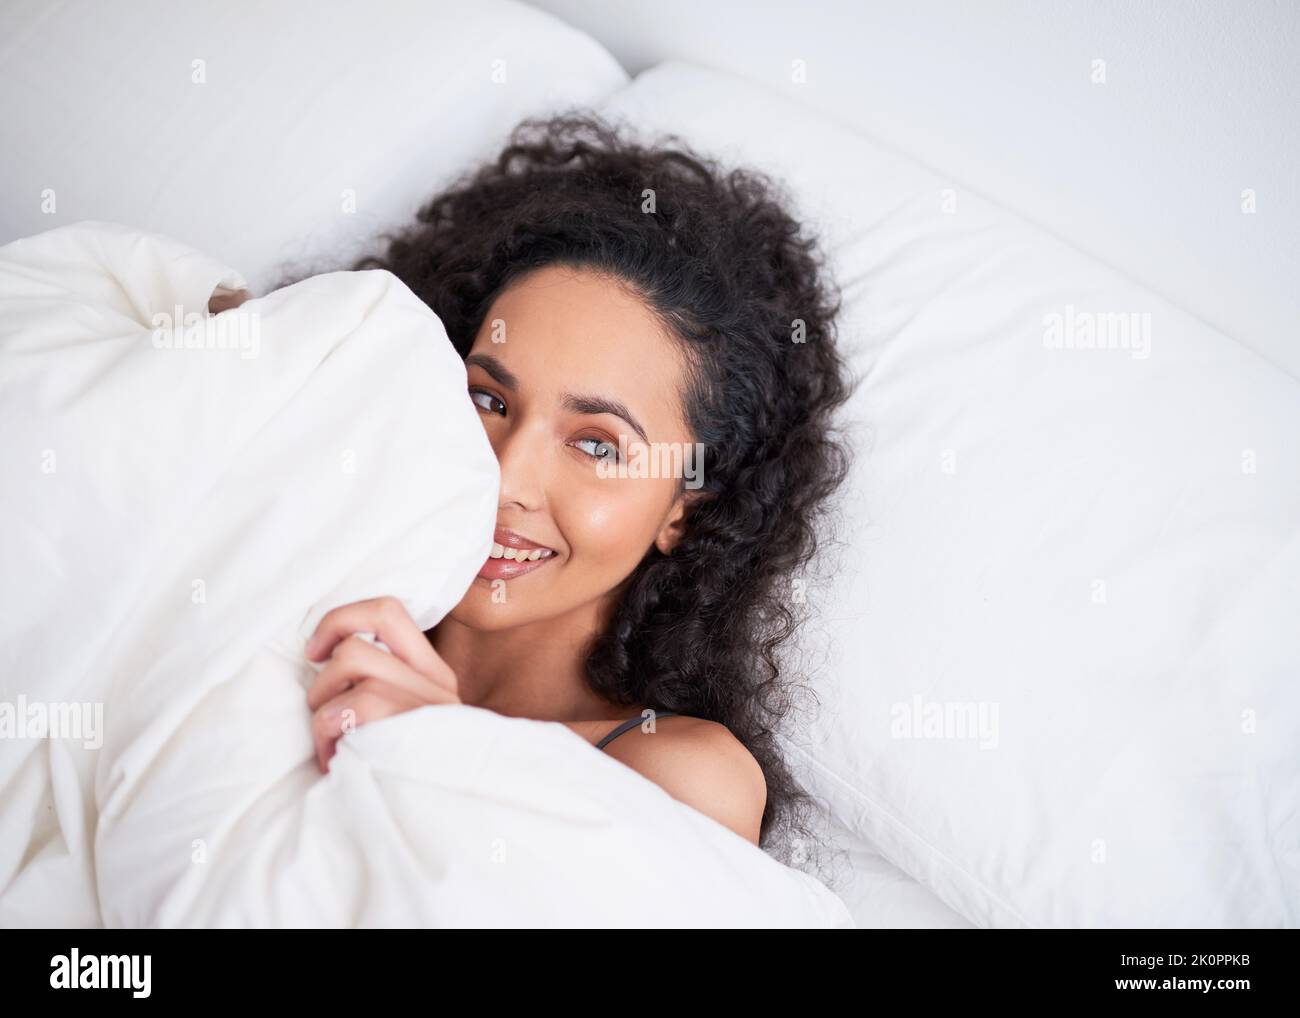 Una giovane donna multietnica si nasconde giocosamente sotto il piumino in lenzuola bianche Foto Stock